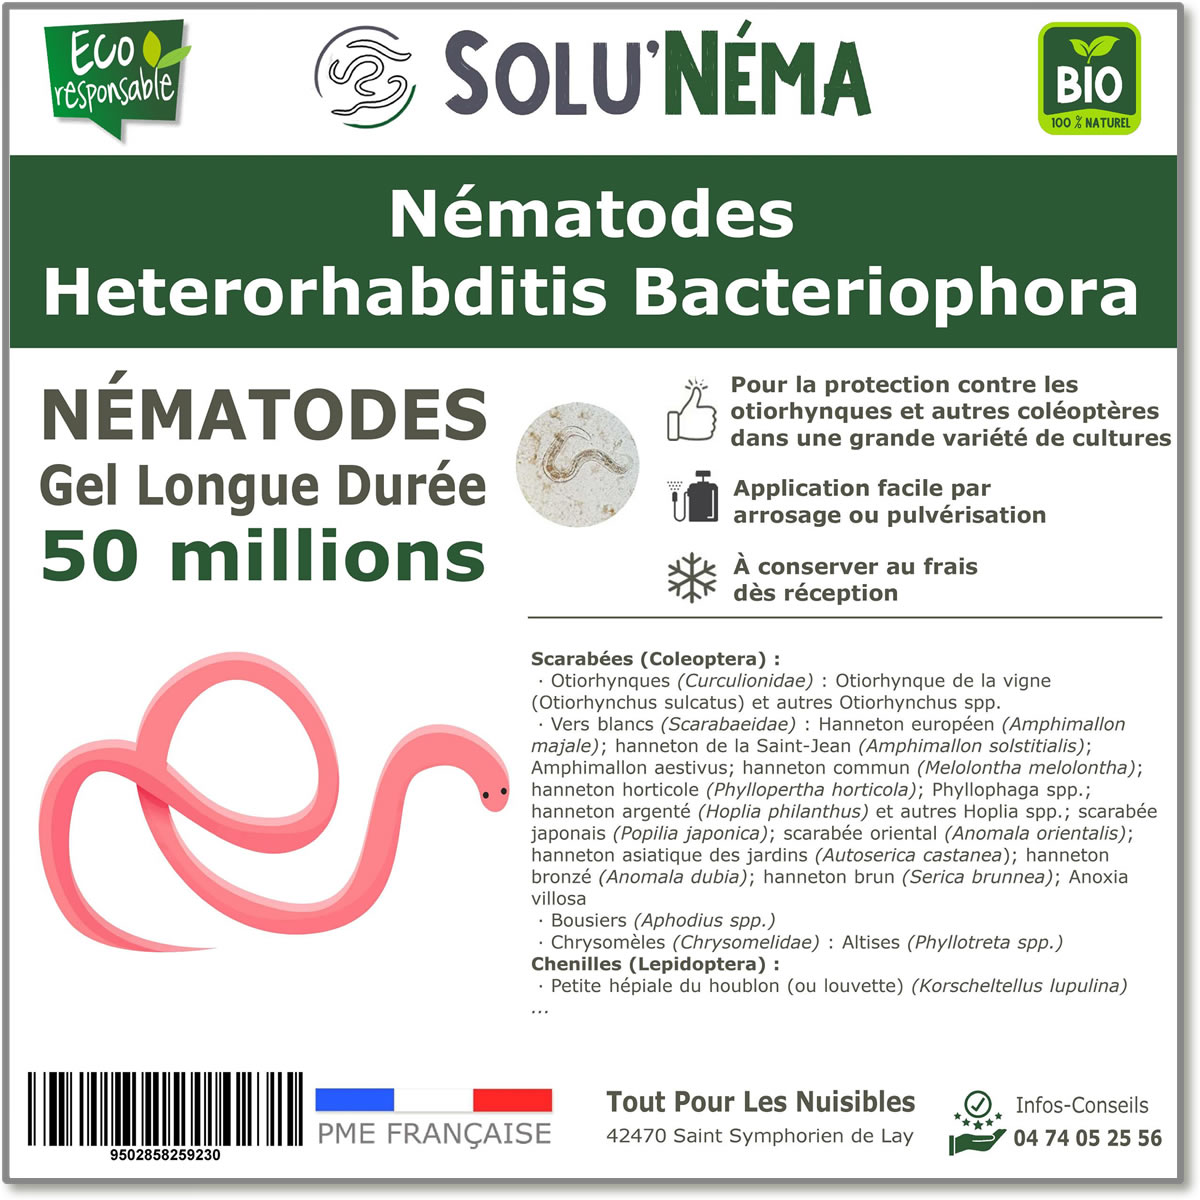 50 miljoen Heterorhabditis Bacteriophora (HB) nematoden